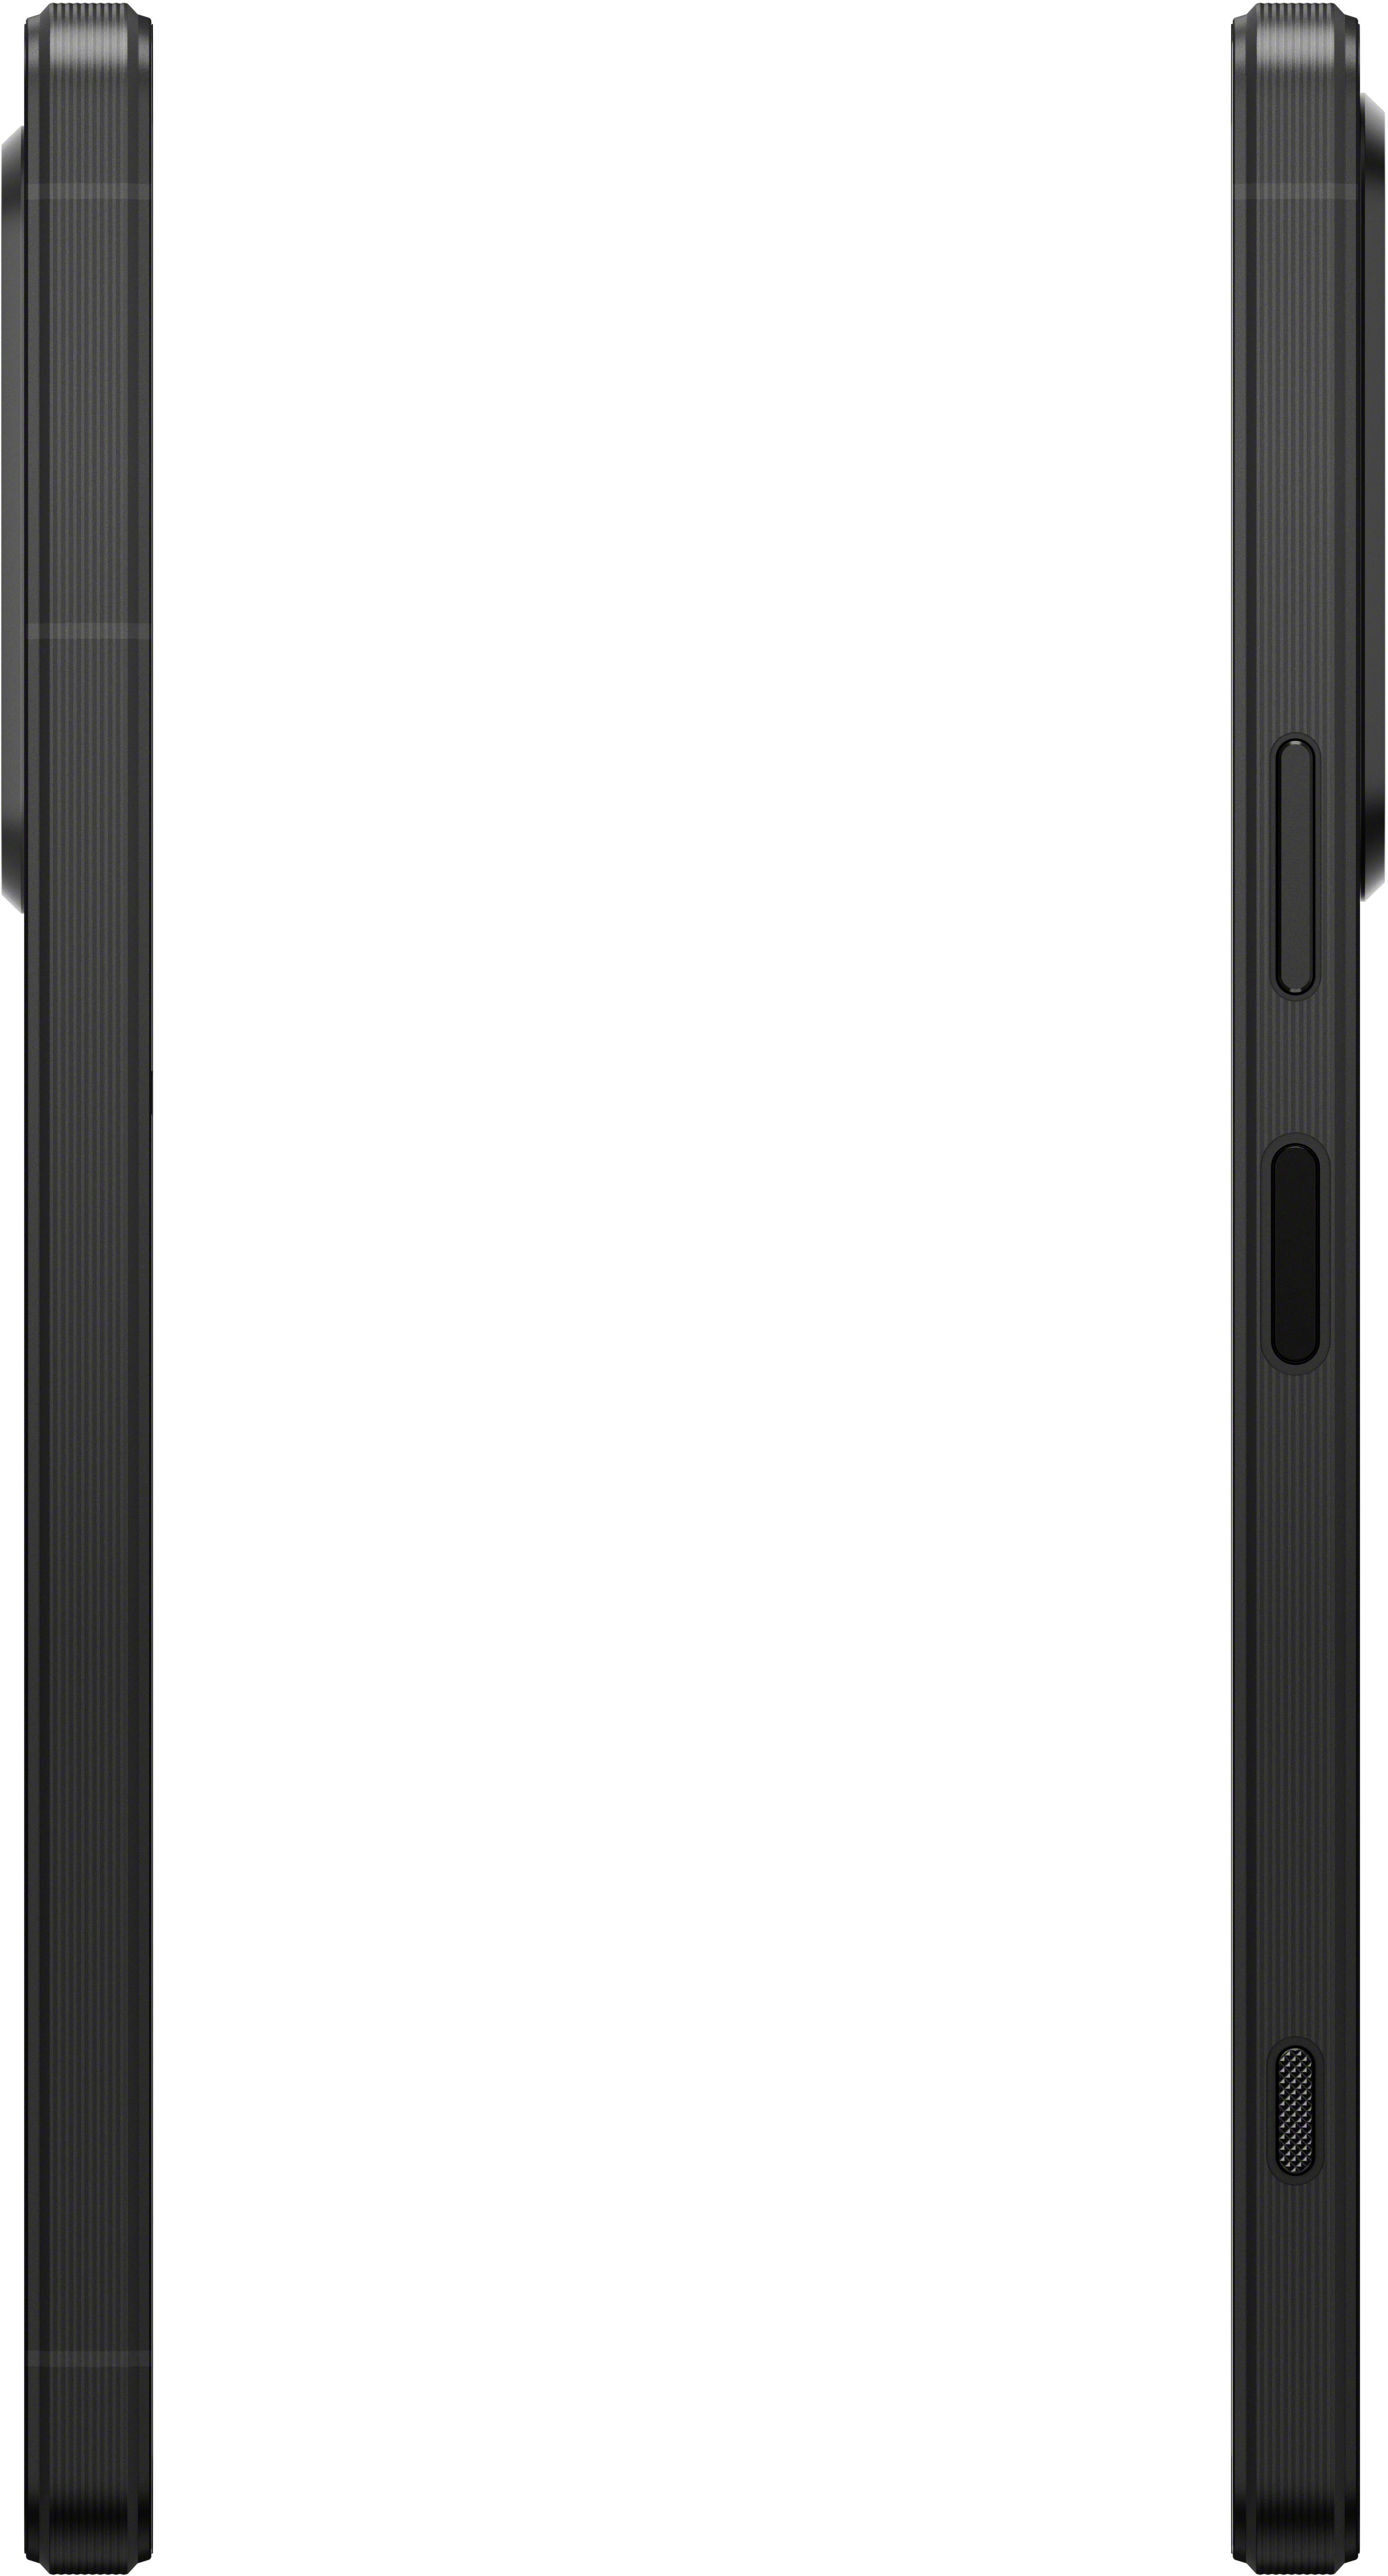 V 5G Sony - Buy Black Xperia (Unlocked) Best XQDQ62/B 256GB 1